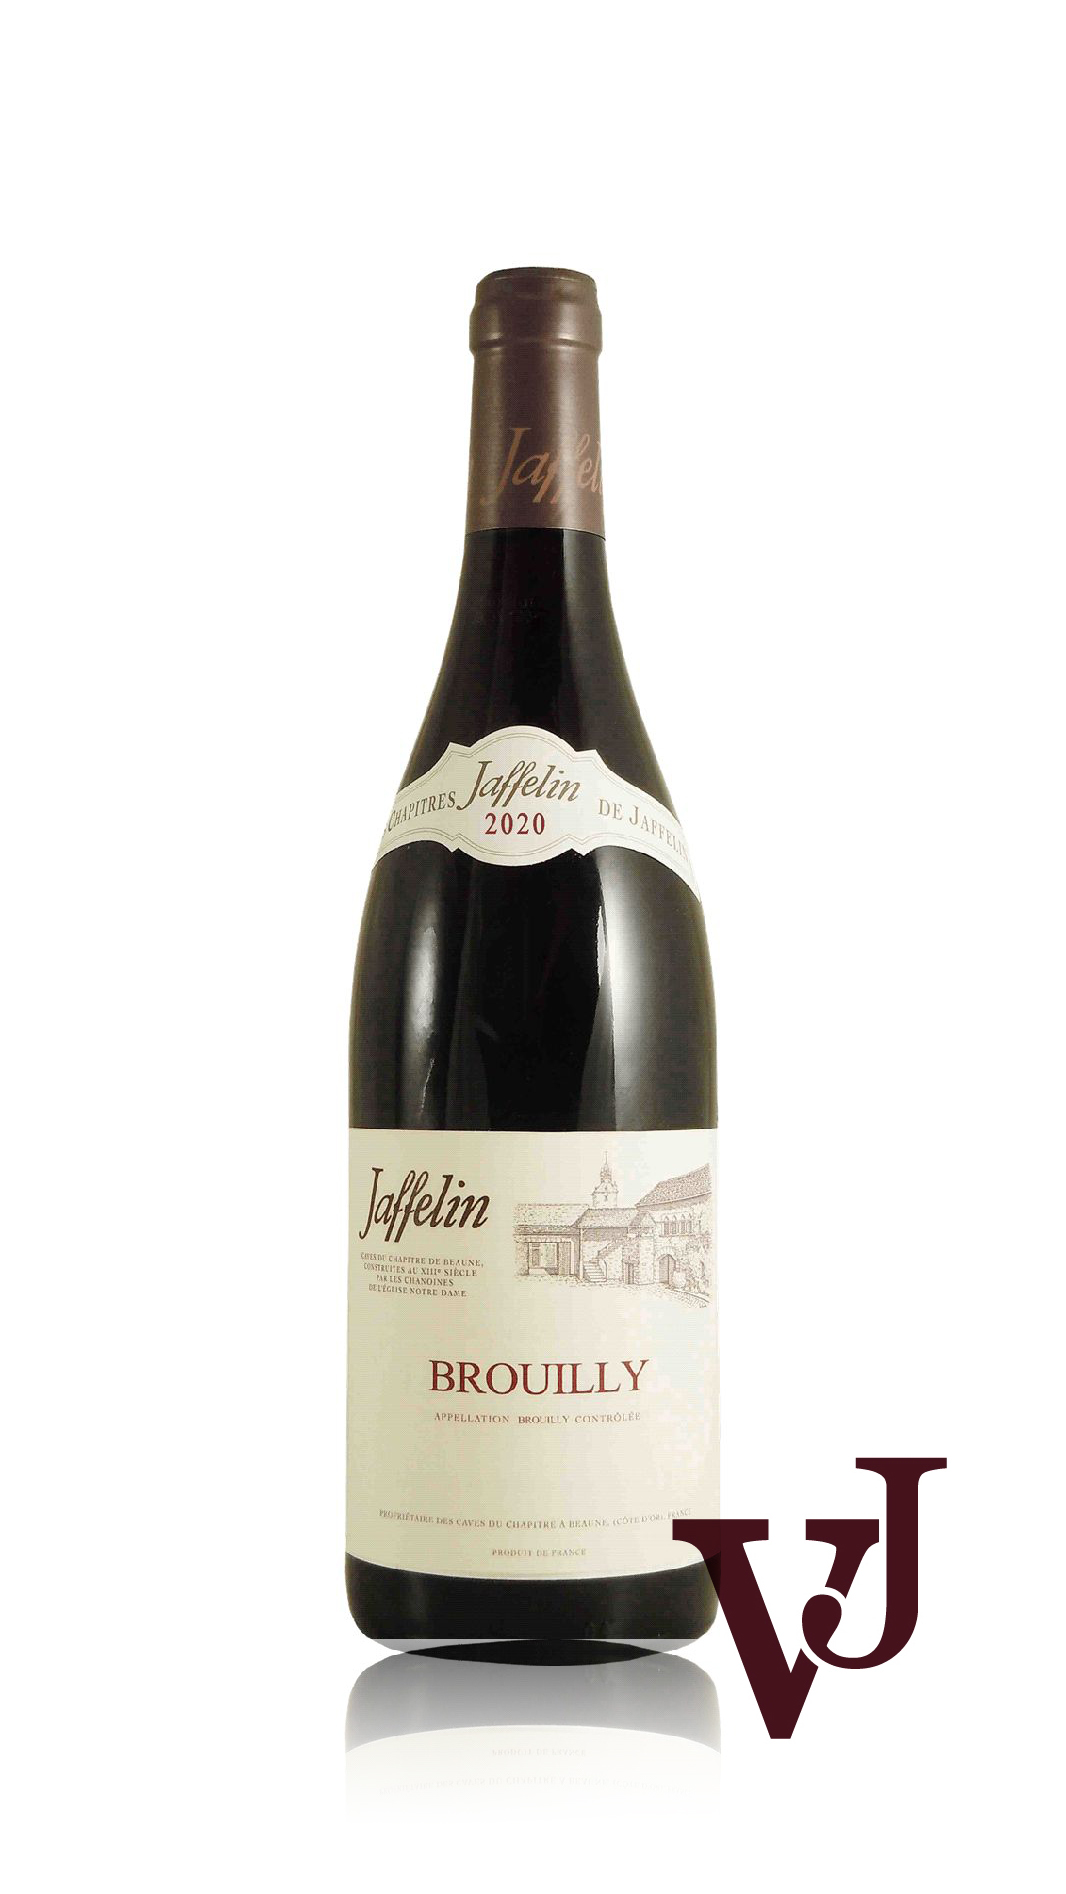 Rött Vin - Jaffelin Brouilly artikel nummer 5384201 från producenten Jaffelin från området Frankrike